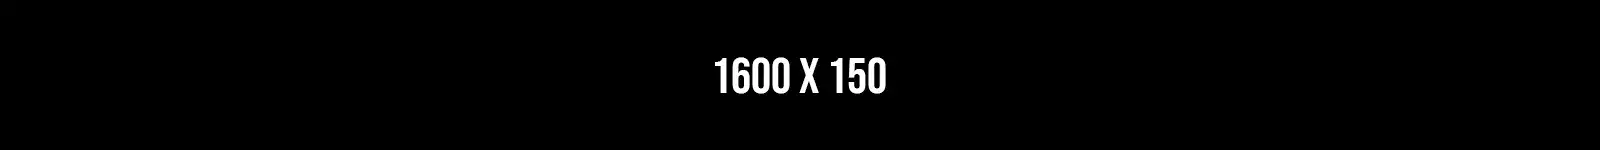 1600 x 150